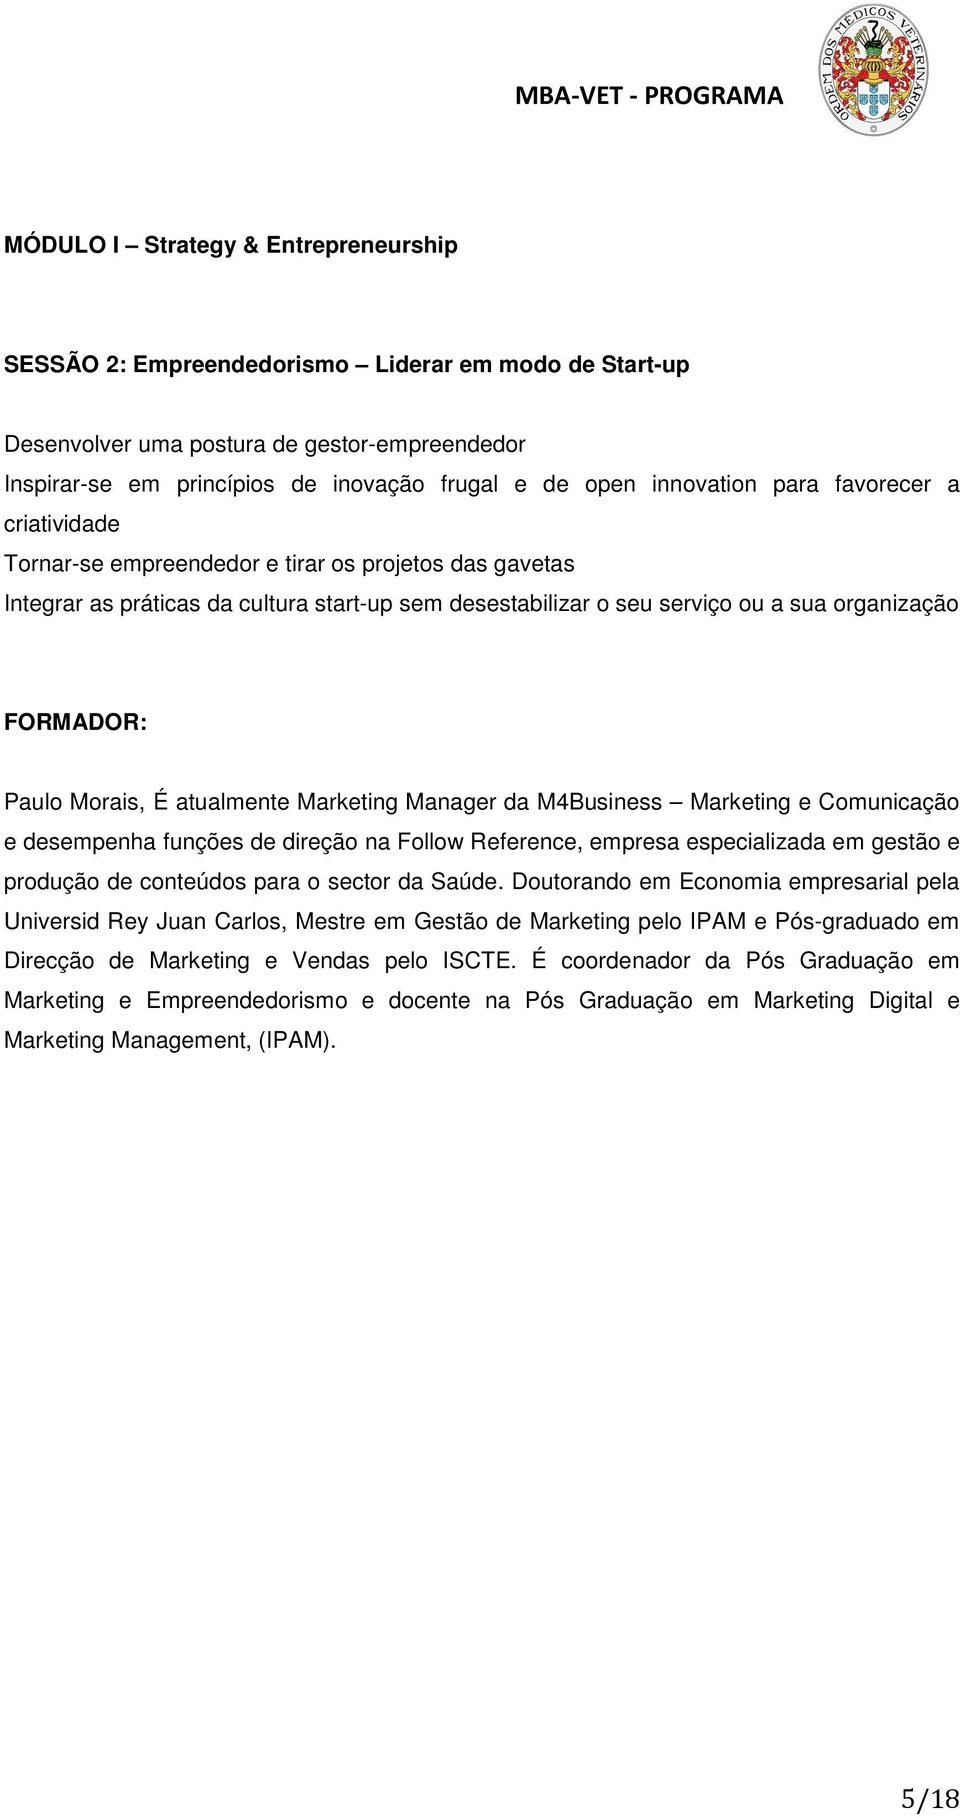 FORMADOR: Paulo Morais, É atualmente Marketing Manager da M4Business Marketing e Comunicação e desempenha funções de direção na Follow Reference, empresa especializada em gestão e produção de